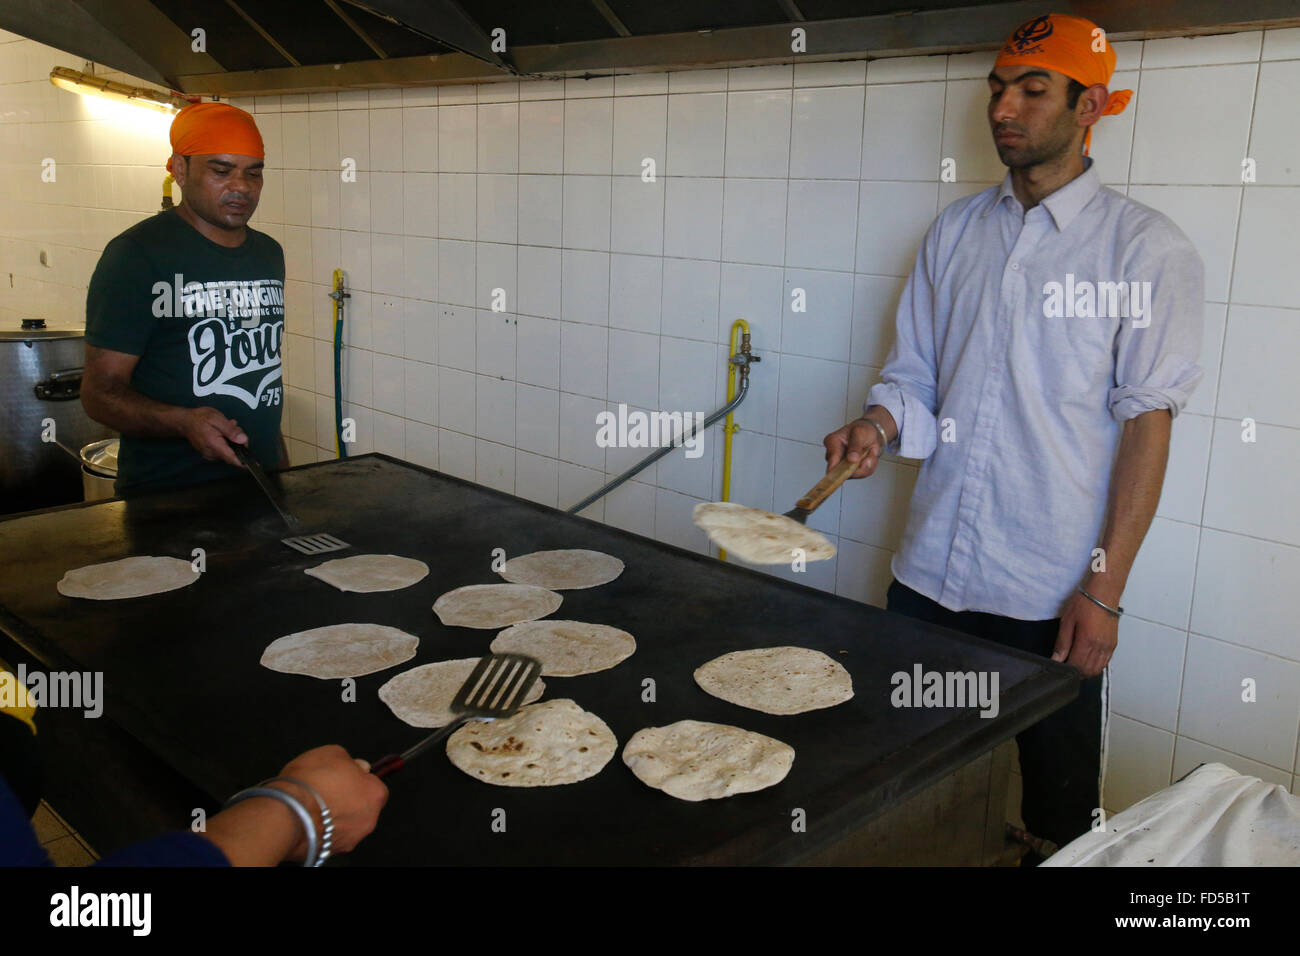 Singh Sabha gurdwara, Bobigny, France. Les dévots de préparer des aliments dans la cuisine. Banque D'Images